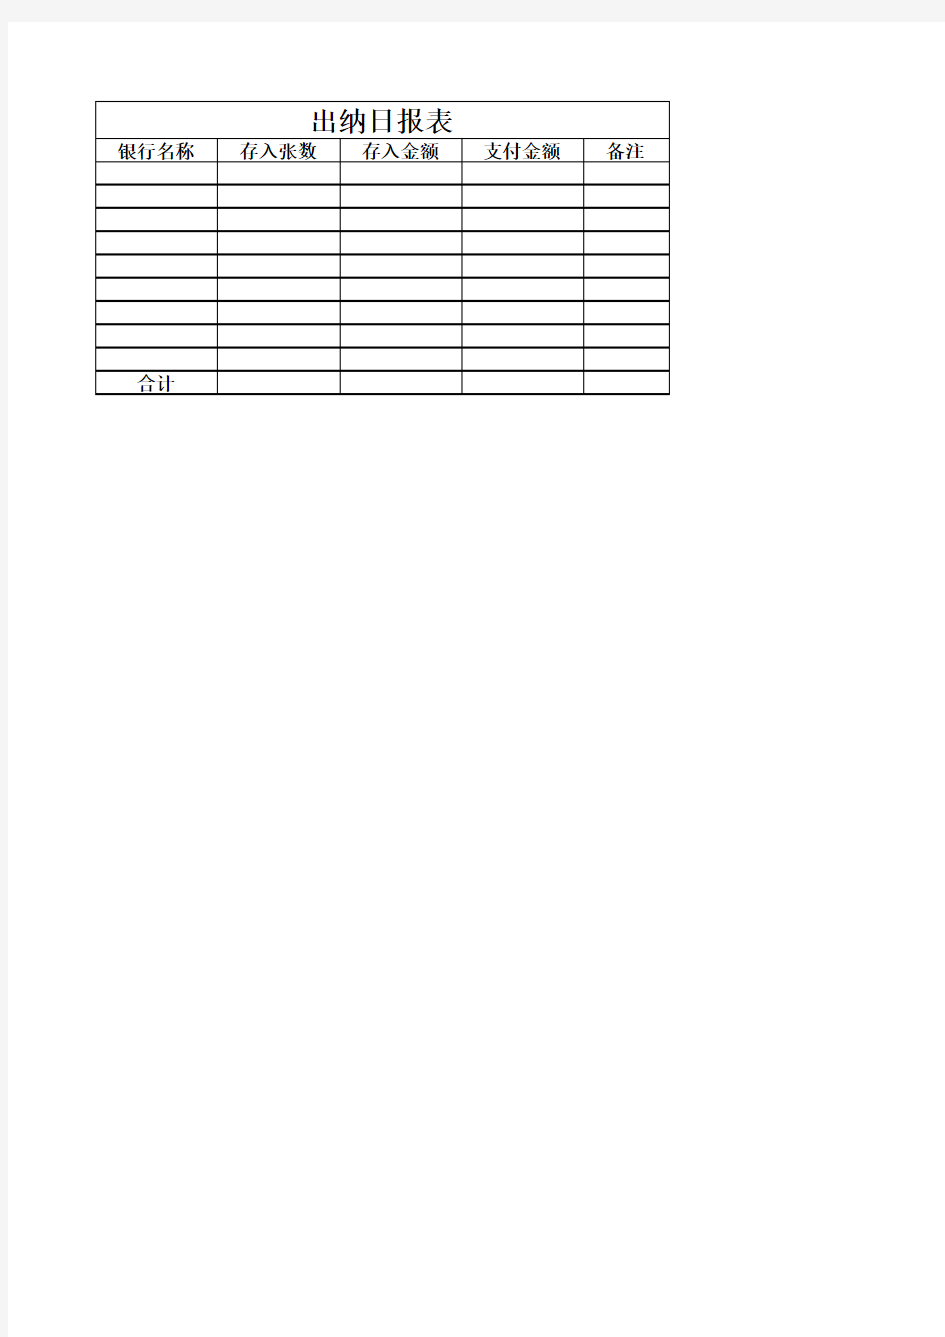 出纳日报表Excel表格模板(4)(2021标准版)